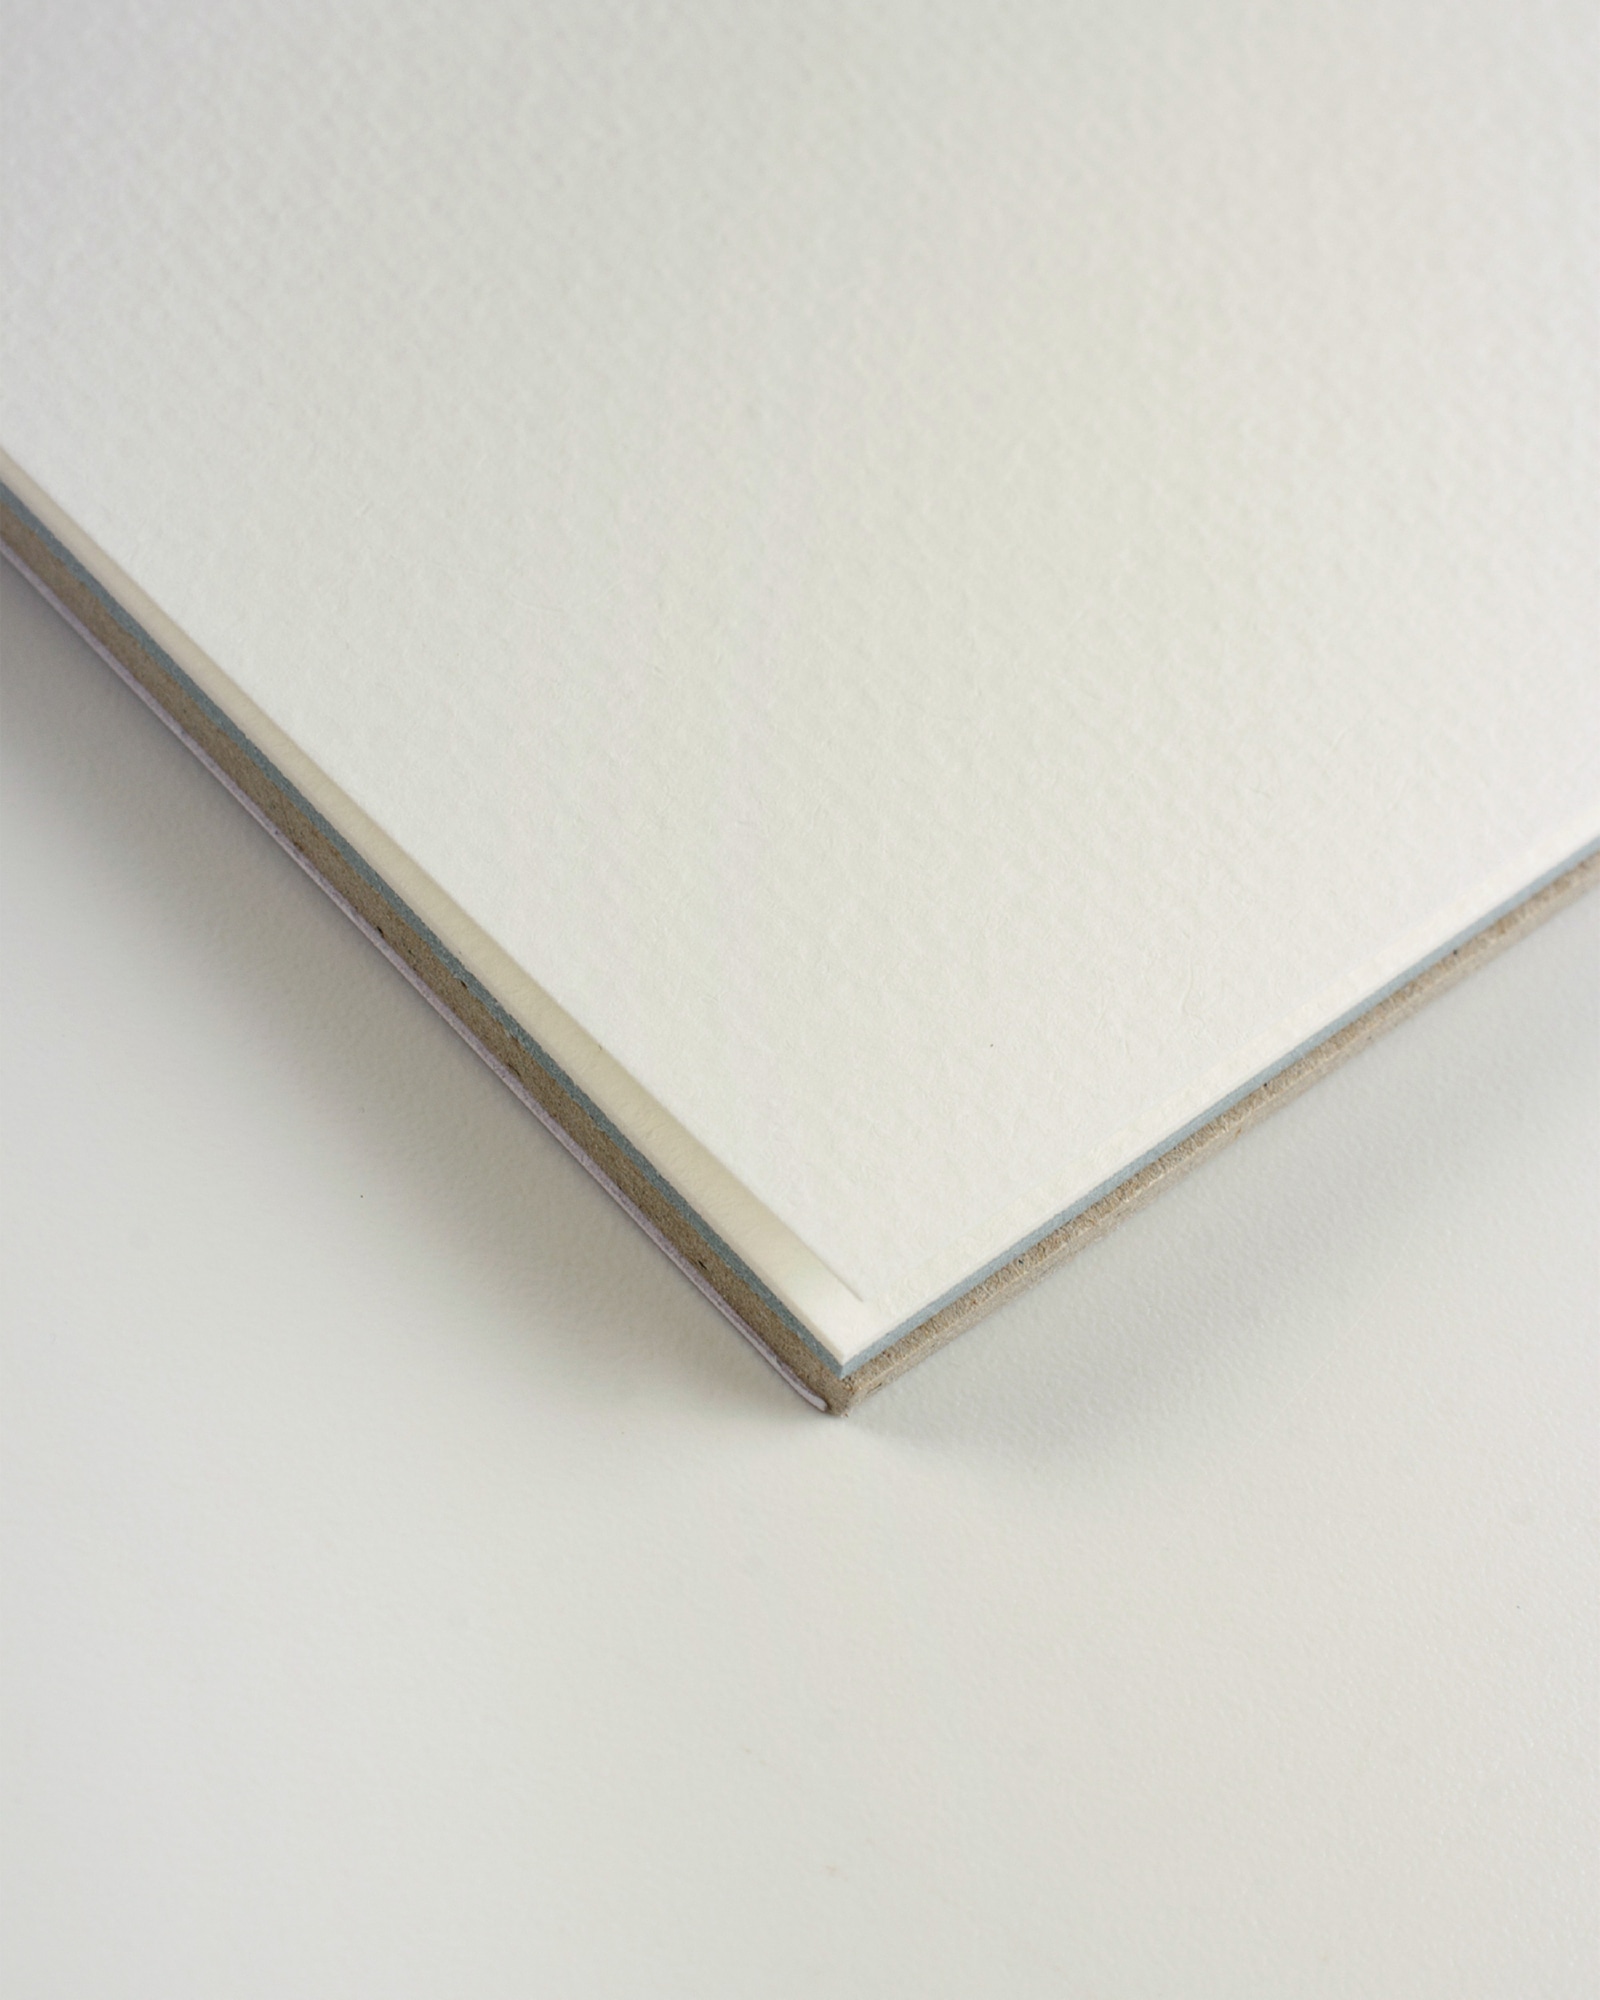 Альбом для пастели Tiziano 160г/м.кв 42x29,7см 6 цветов 30л склейка по 1 стороне